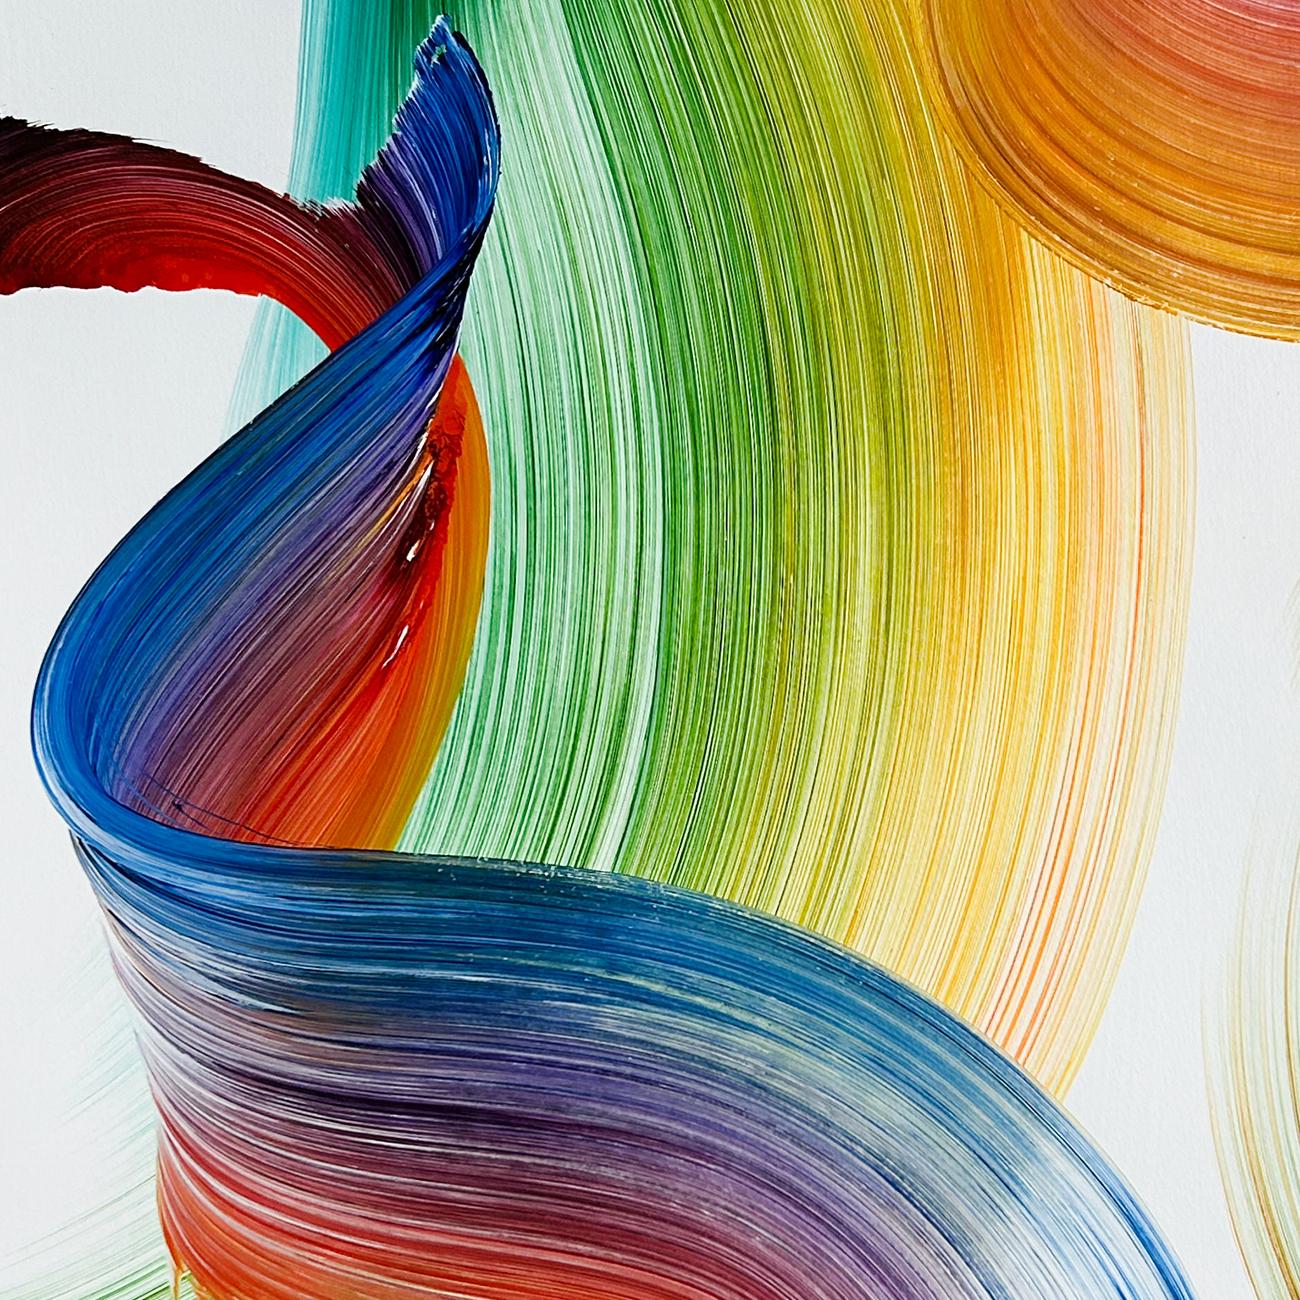 Petites histoires (peinture abstraite)
Acrylique sur papier - Non encadré

Le peintre Nikolaos Schizas, basé à Barcelone, crée des peintures abstraites dynamiques qui rayonnent avec des éclats de couleurs vibrantes et communiquent un fort sentiment